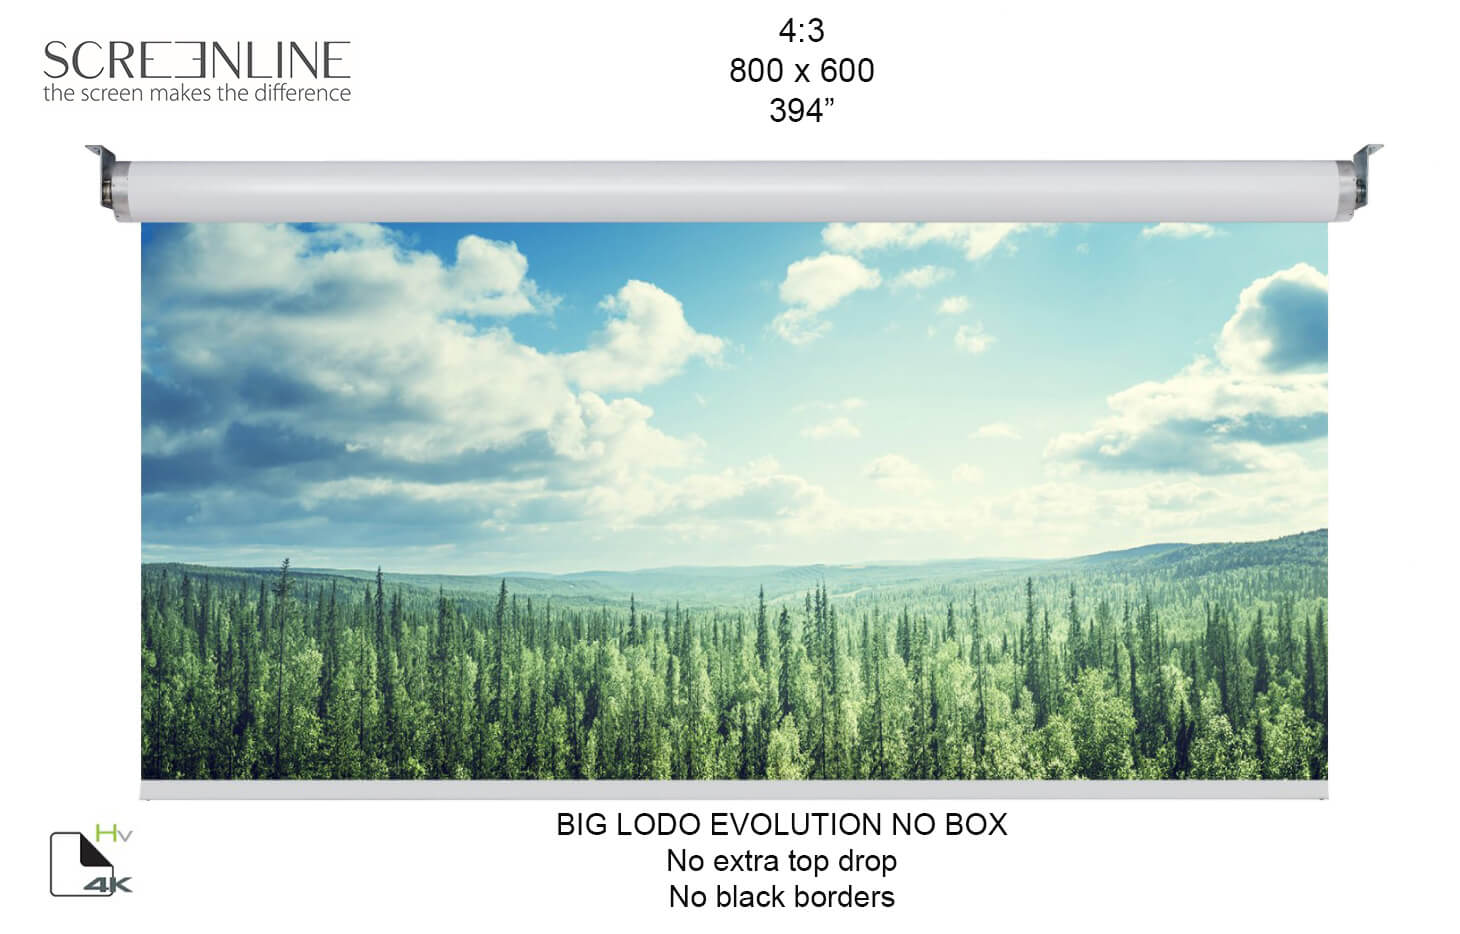 Ecran proiectie motorizat Screenline BIG LODO EVO NO BOX Home Vision,800x600(394”),4:3, alb,comutator perete